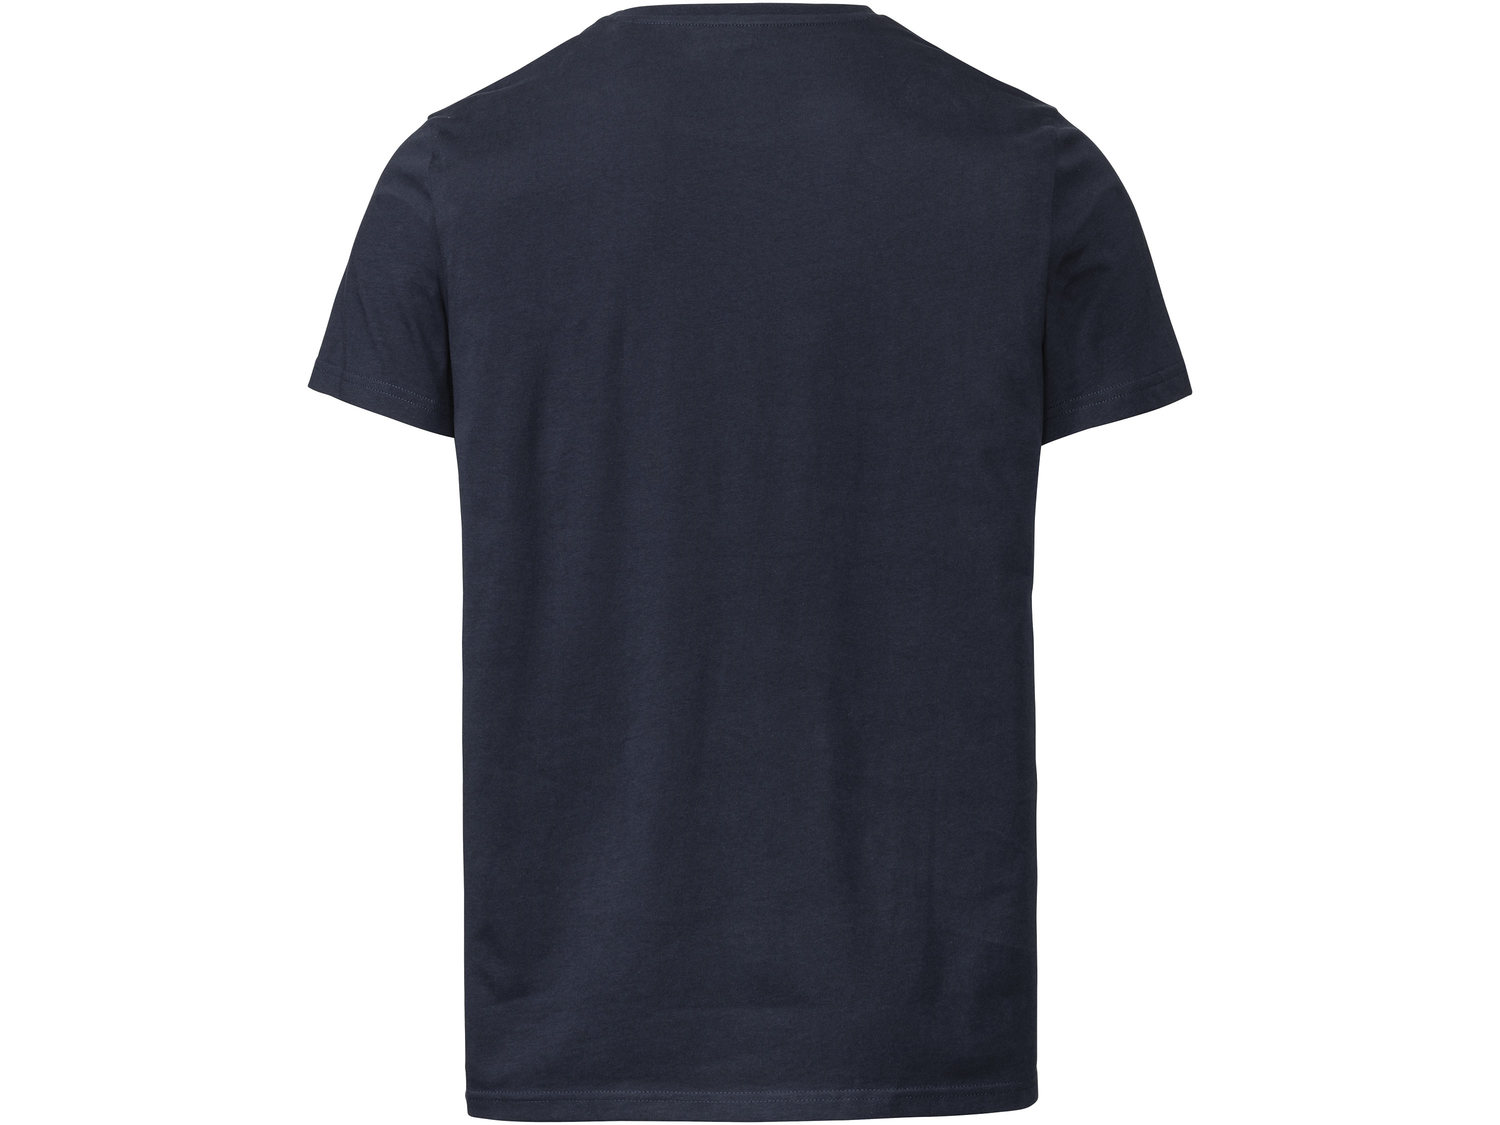 T-shirt Livergy, cena 12,99 PLN 
- 100% bawełny
- rozmiary: M-XXL
- Hohenstein ...